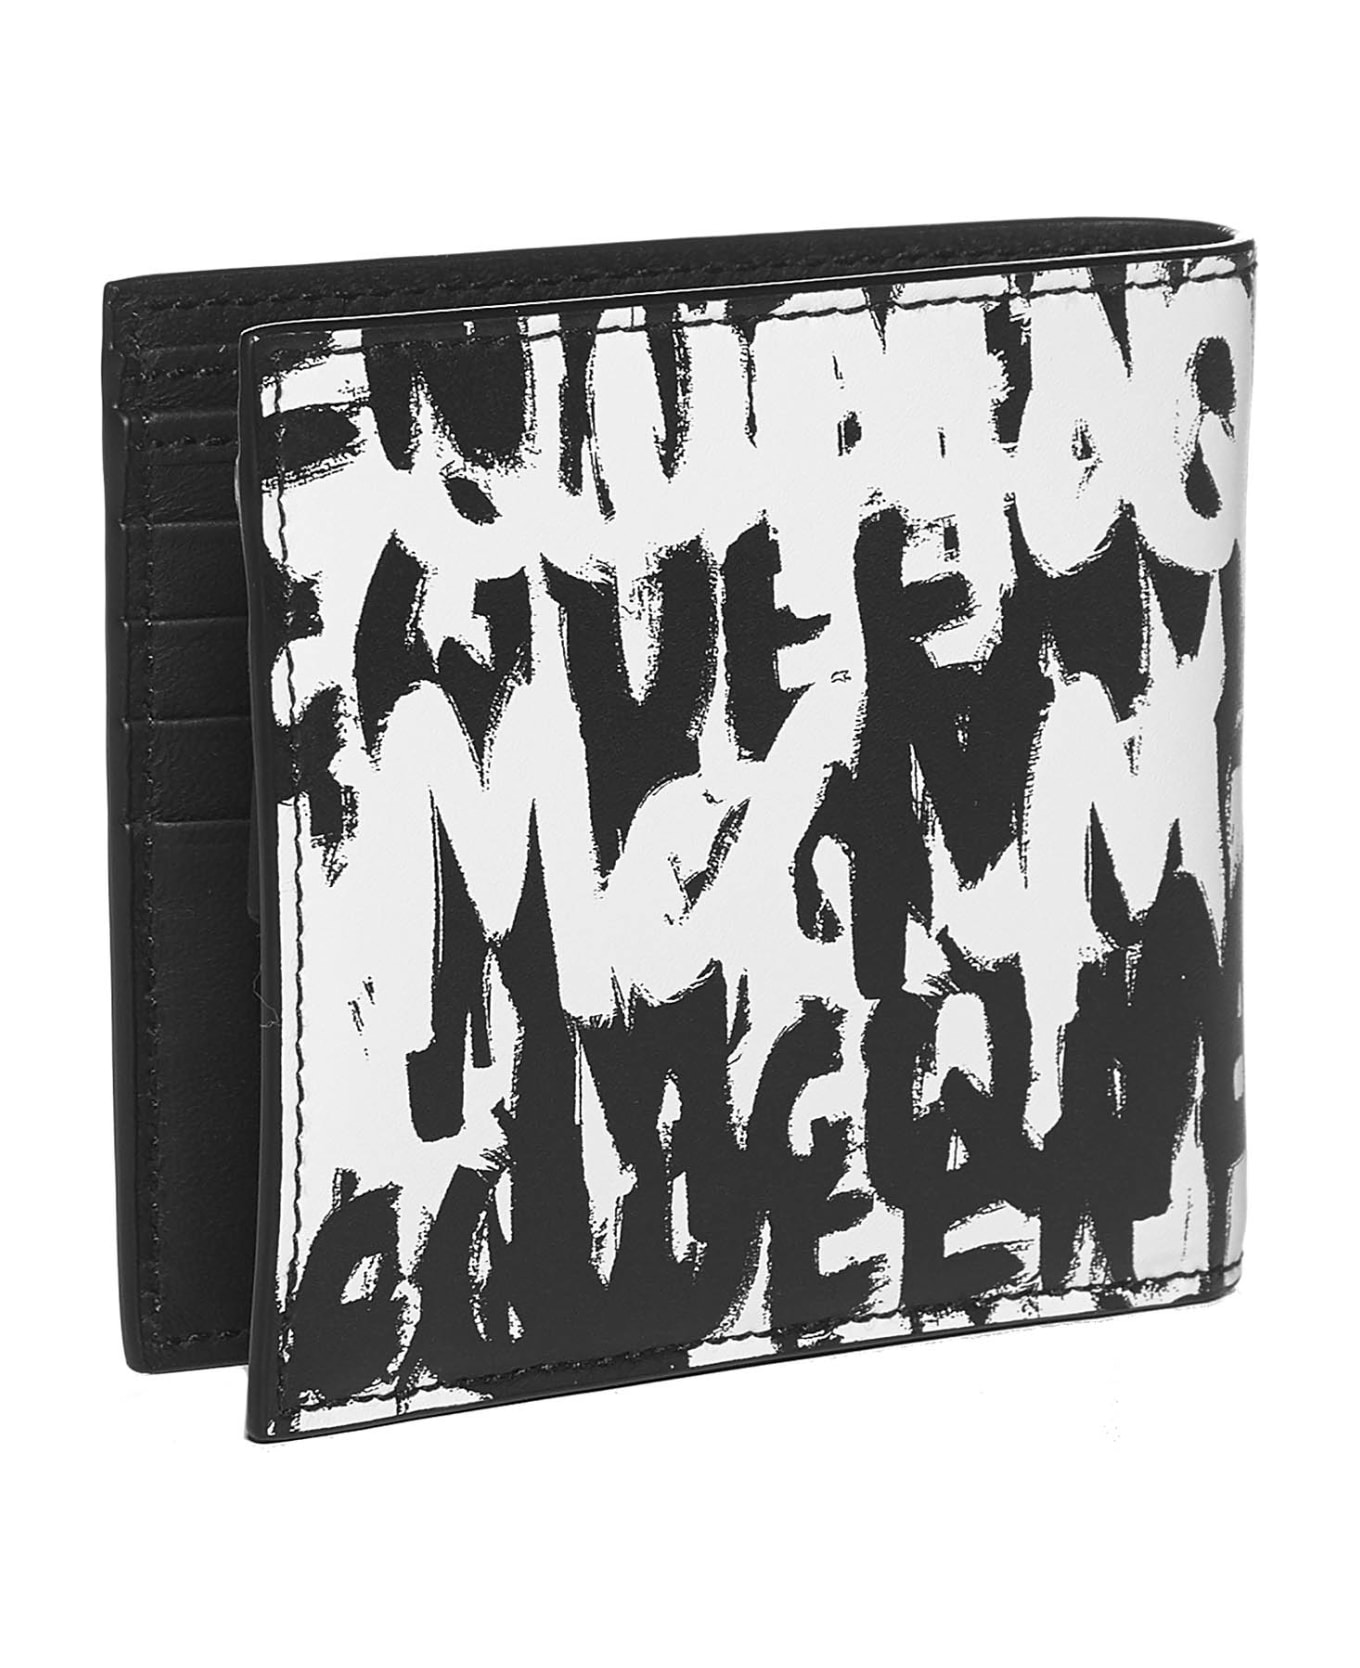 Alexander McQueen Wallet - Black white